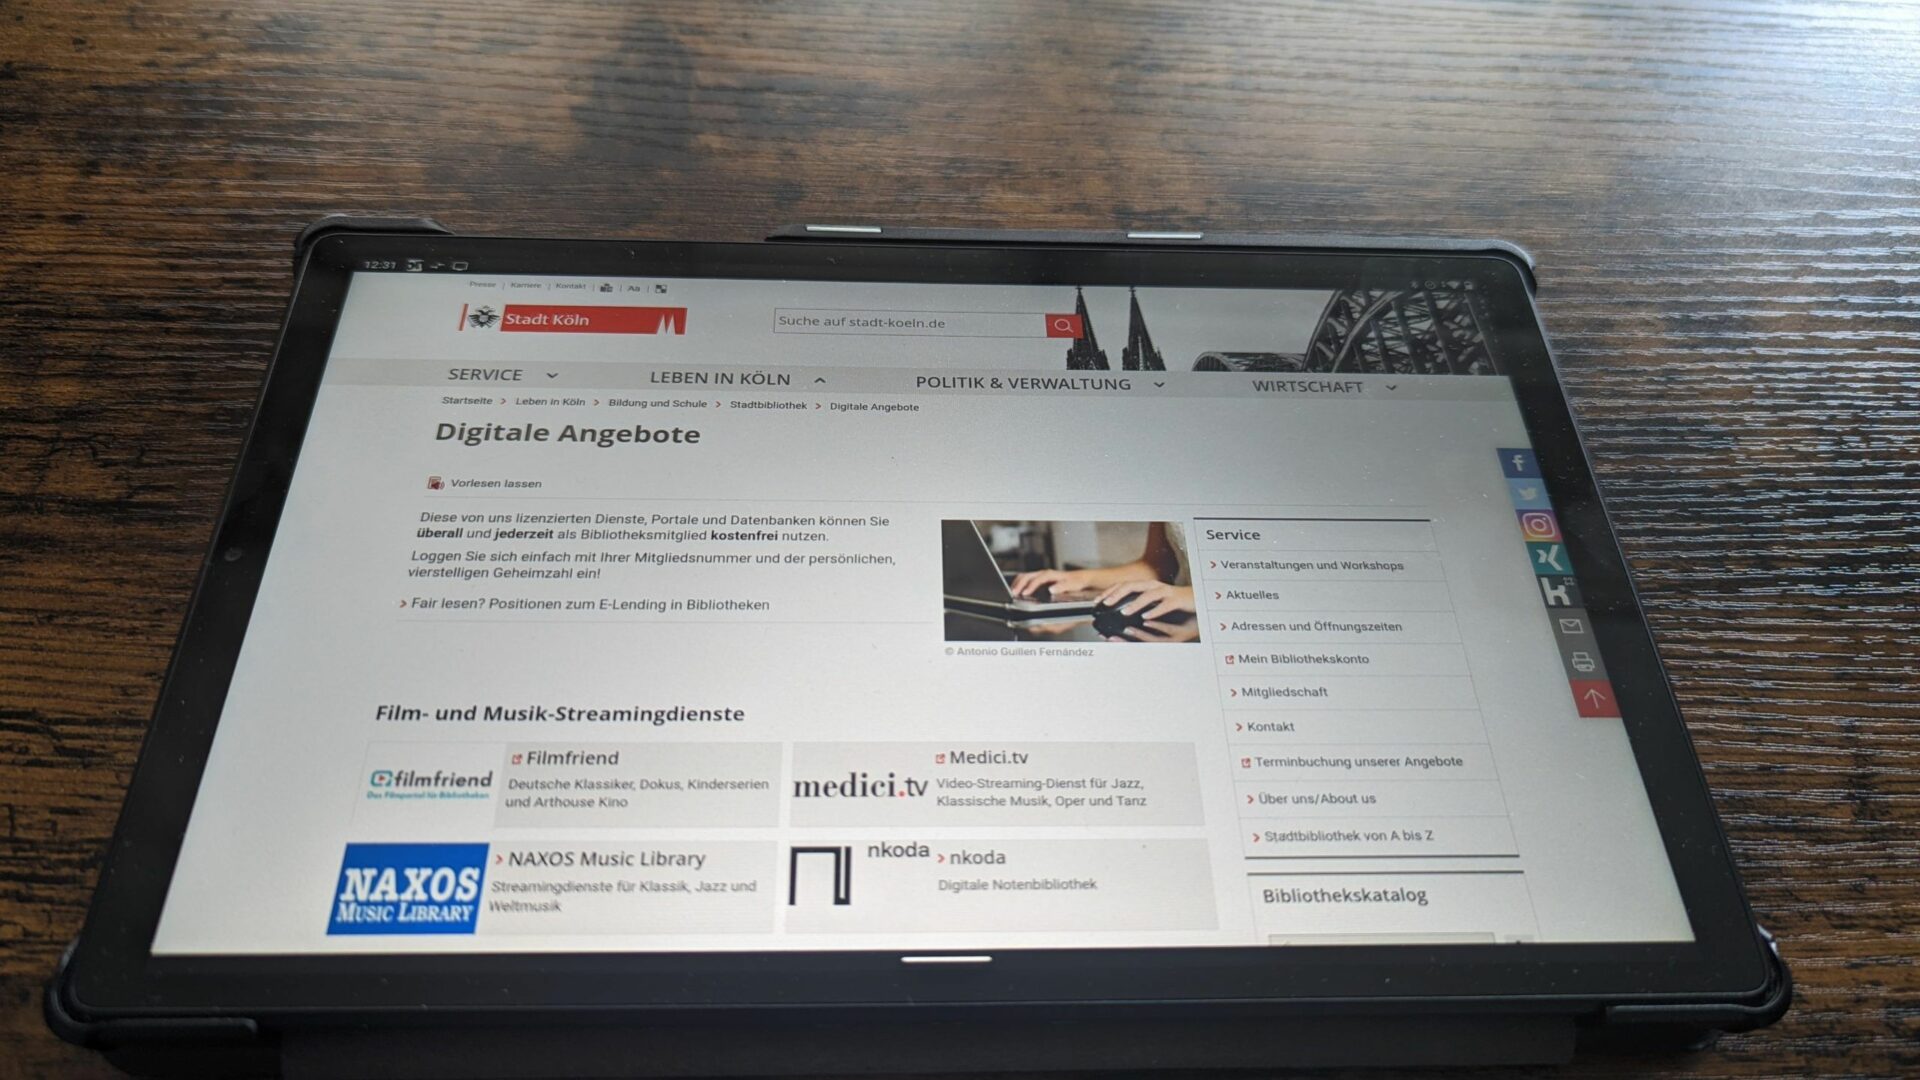 Das Portal für digitale Angebote bei der Stadtbibliothek Köln